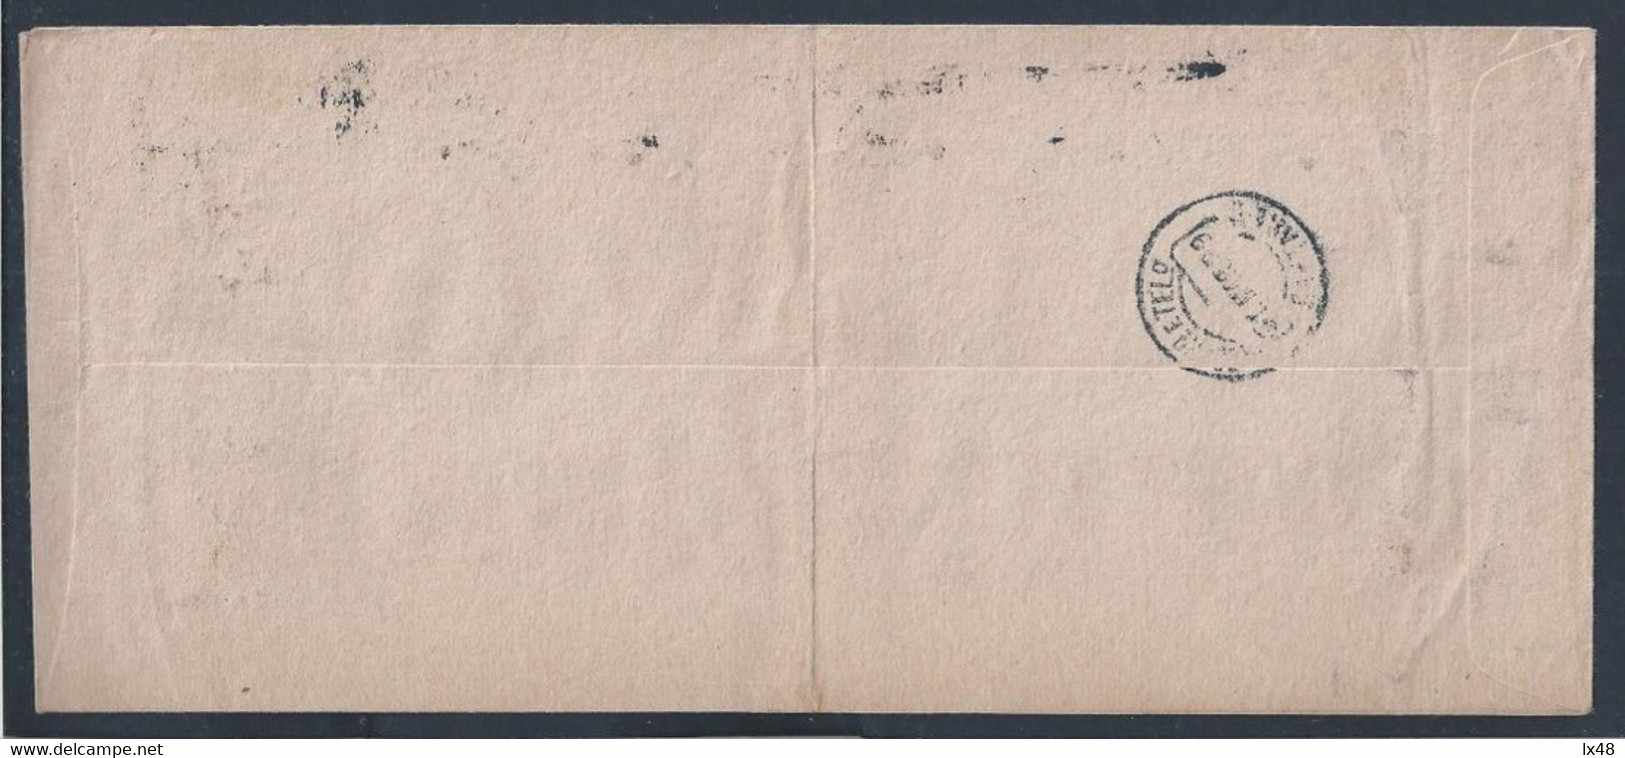 Rare Perfin BNU - Banco Nacional Ultramarino, London On Letter Circulated In 1929. Perfin 37 Holes. Muito Raro S/carta. - Cartas & Documentos